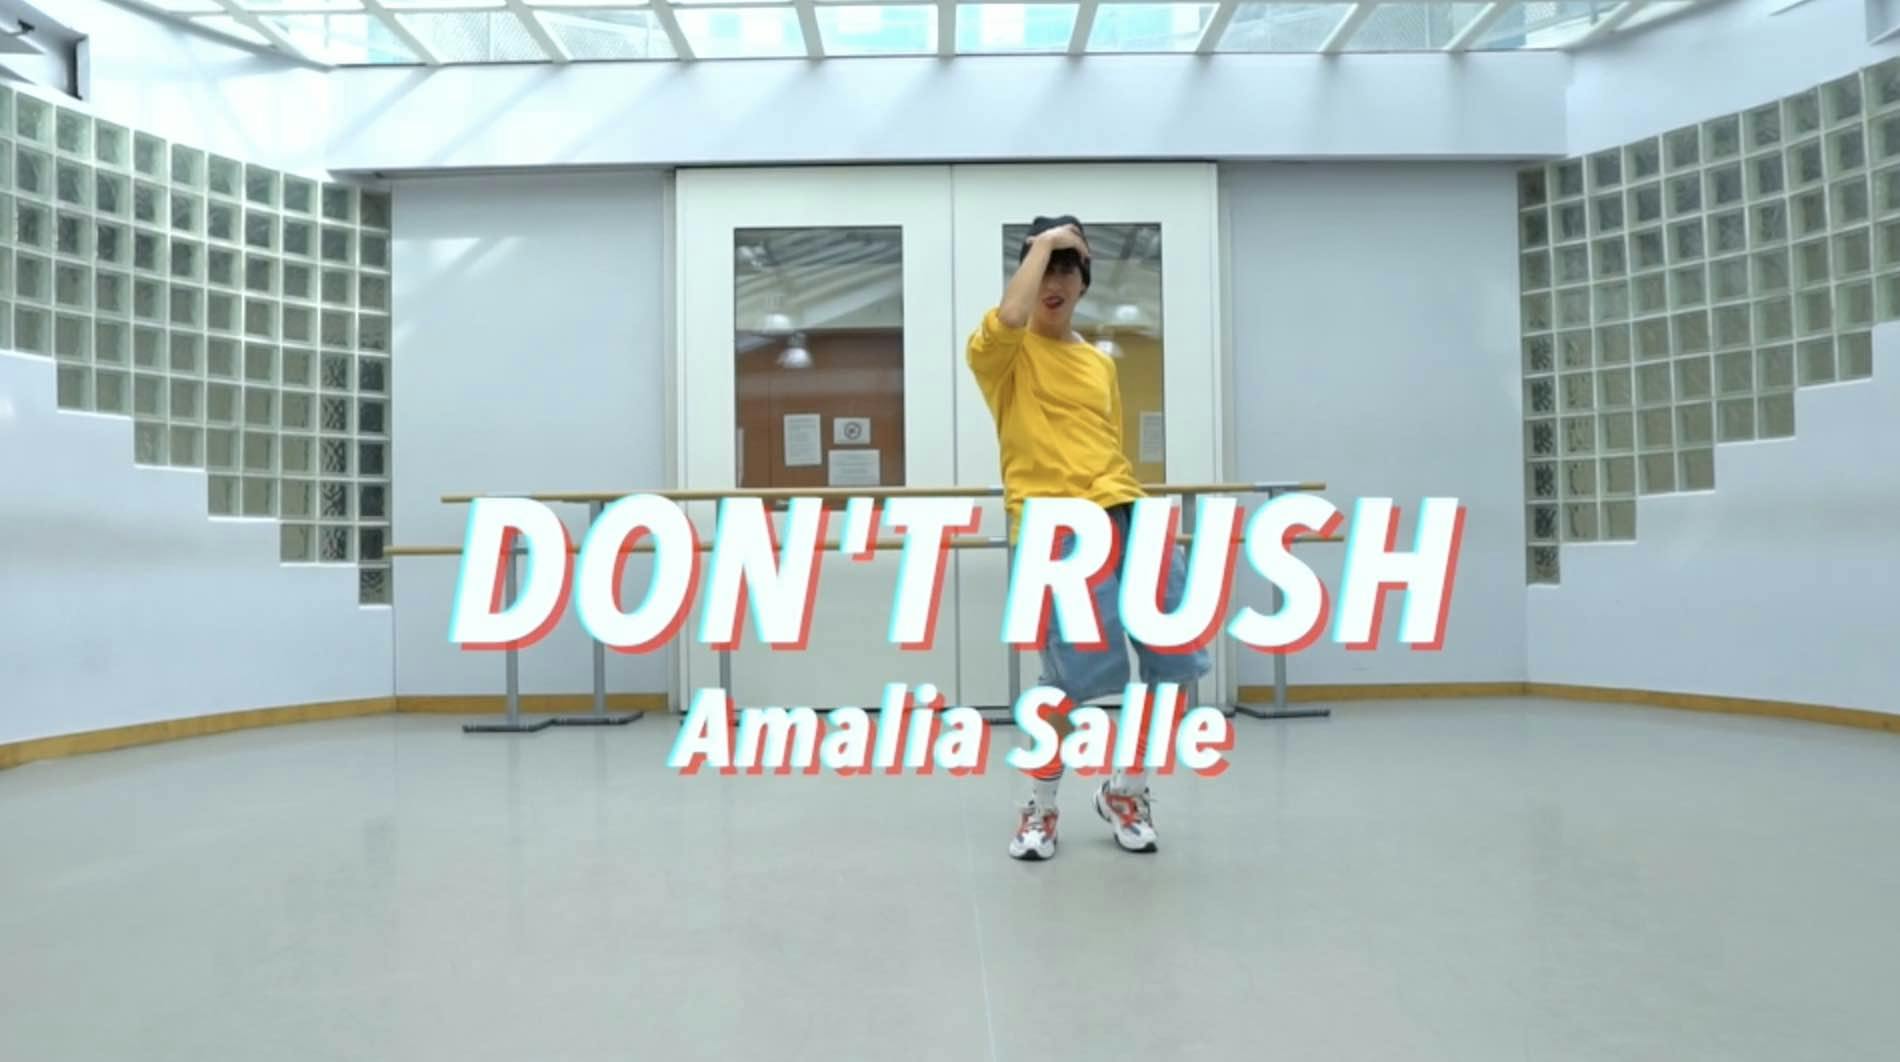 Cours de danse Don't rush - Young T de Amalia SALLE